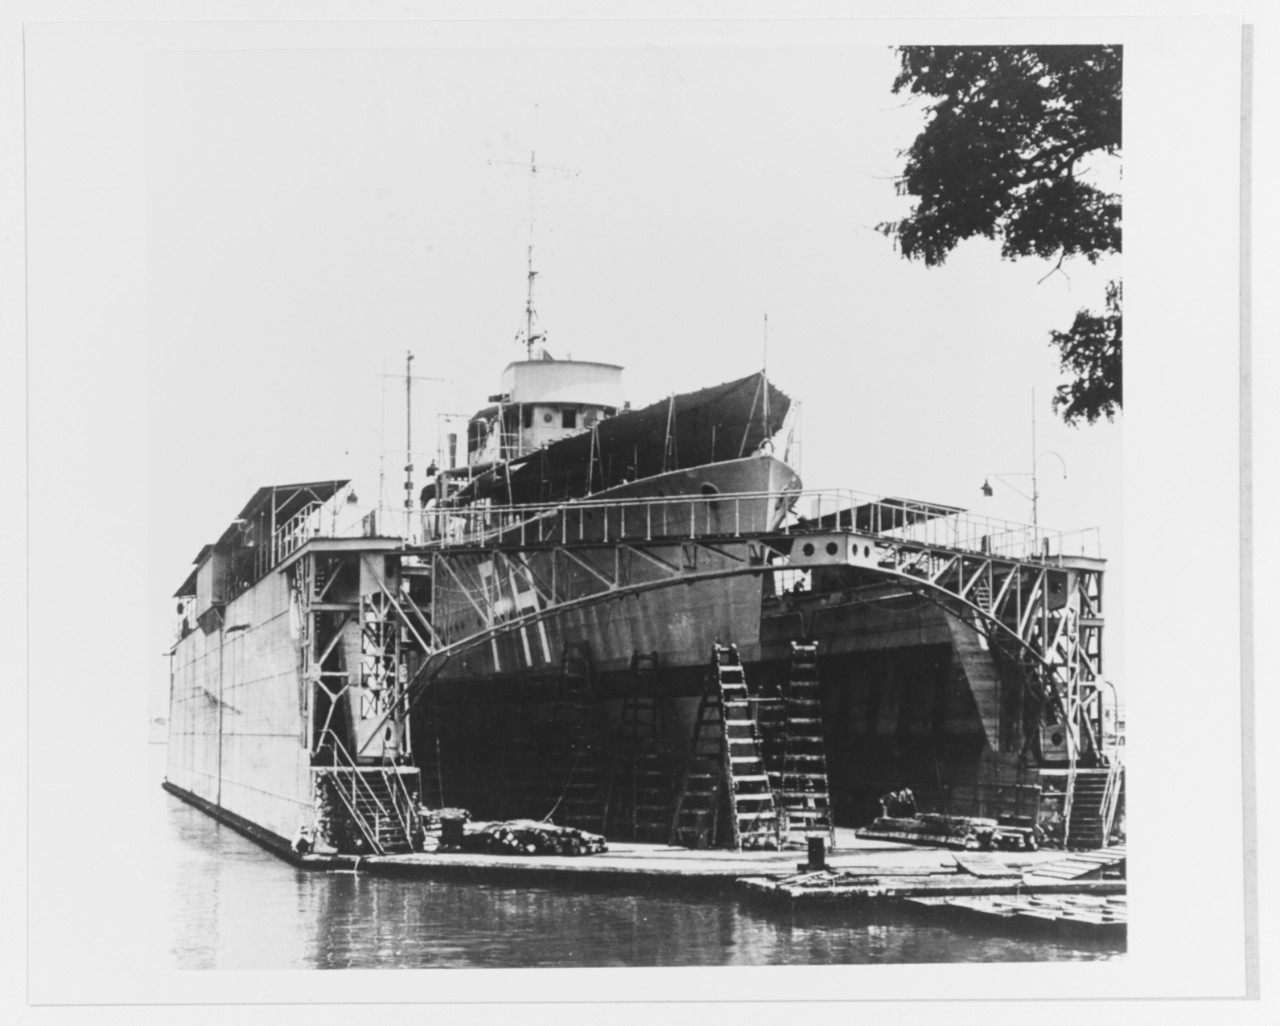 PIET HIEN (Dutch Destroyer, 1927)